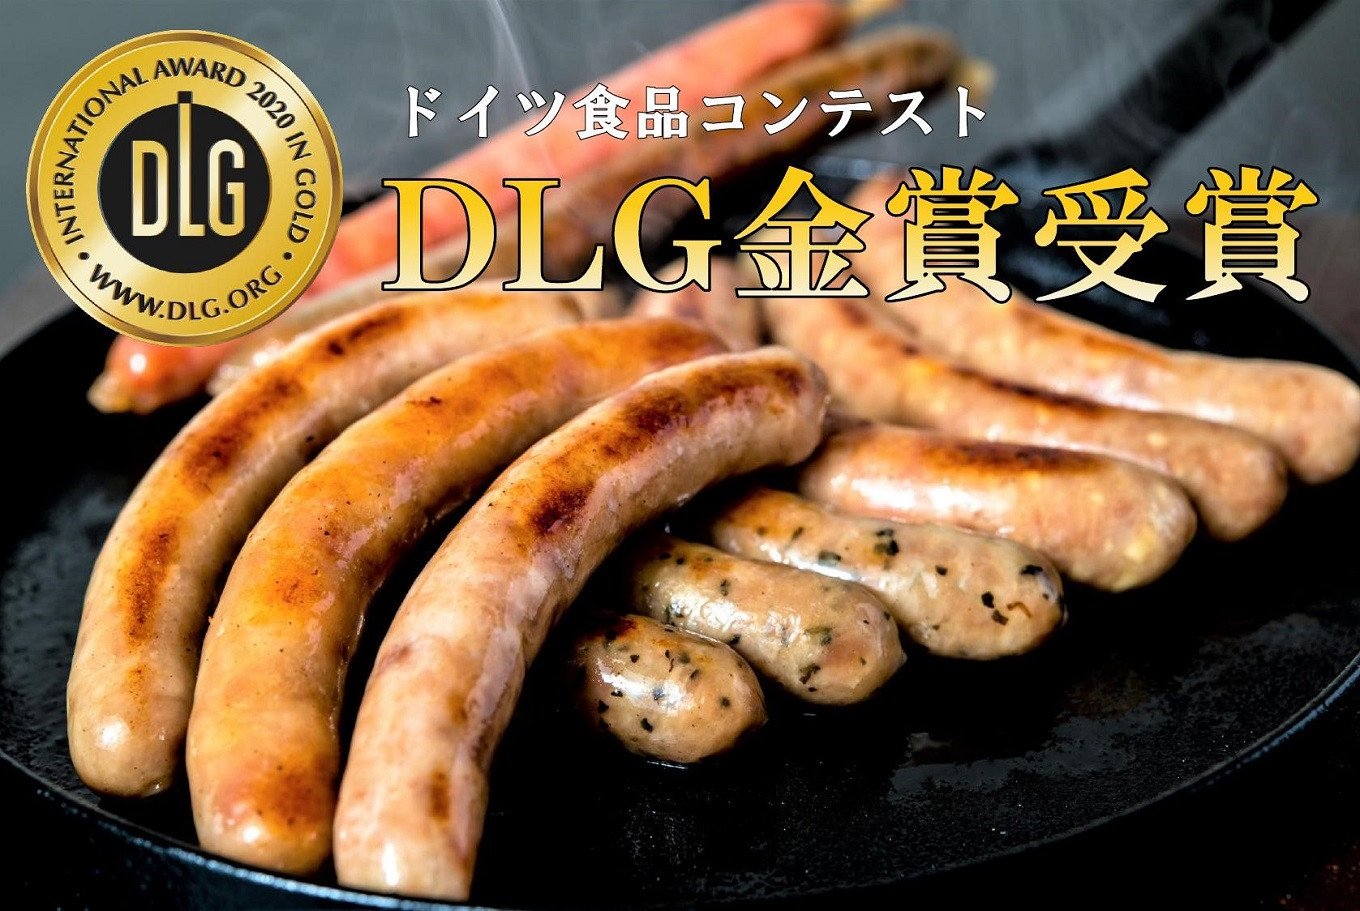 Adf-45【ドイツ食品コンテスト・DLG金賞受賞!!】四万十ポーク・ソーセージ5種セット